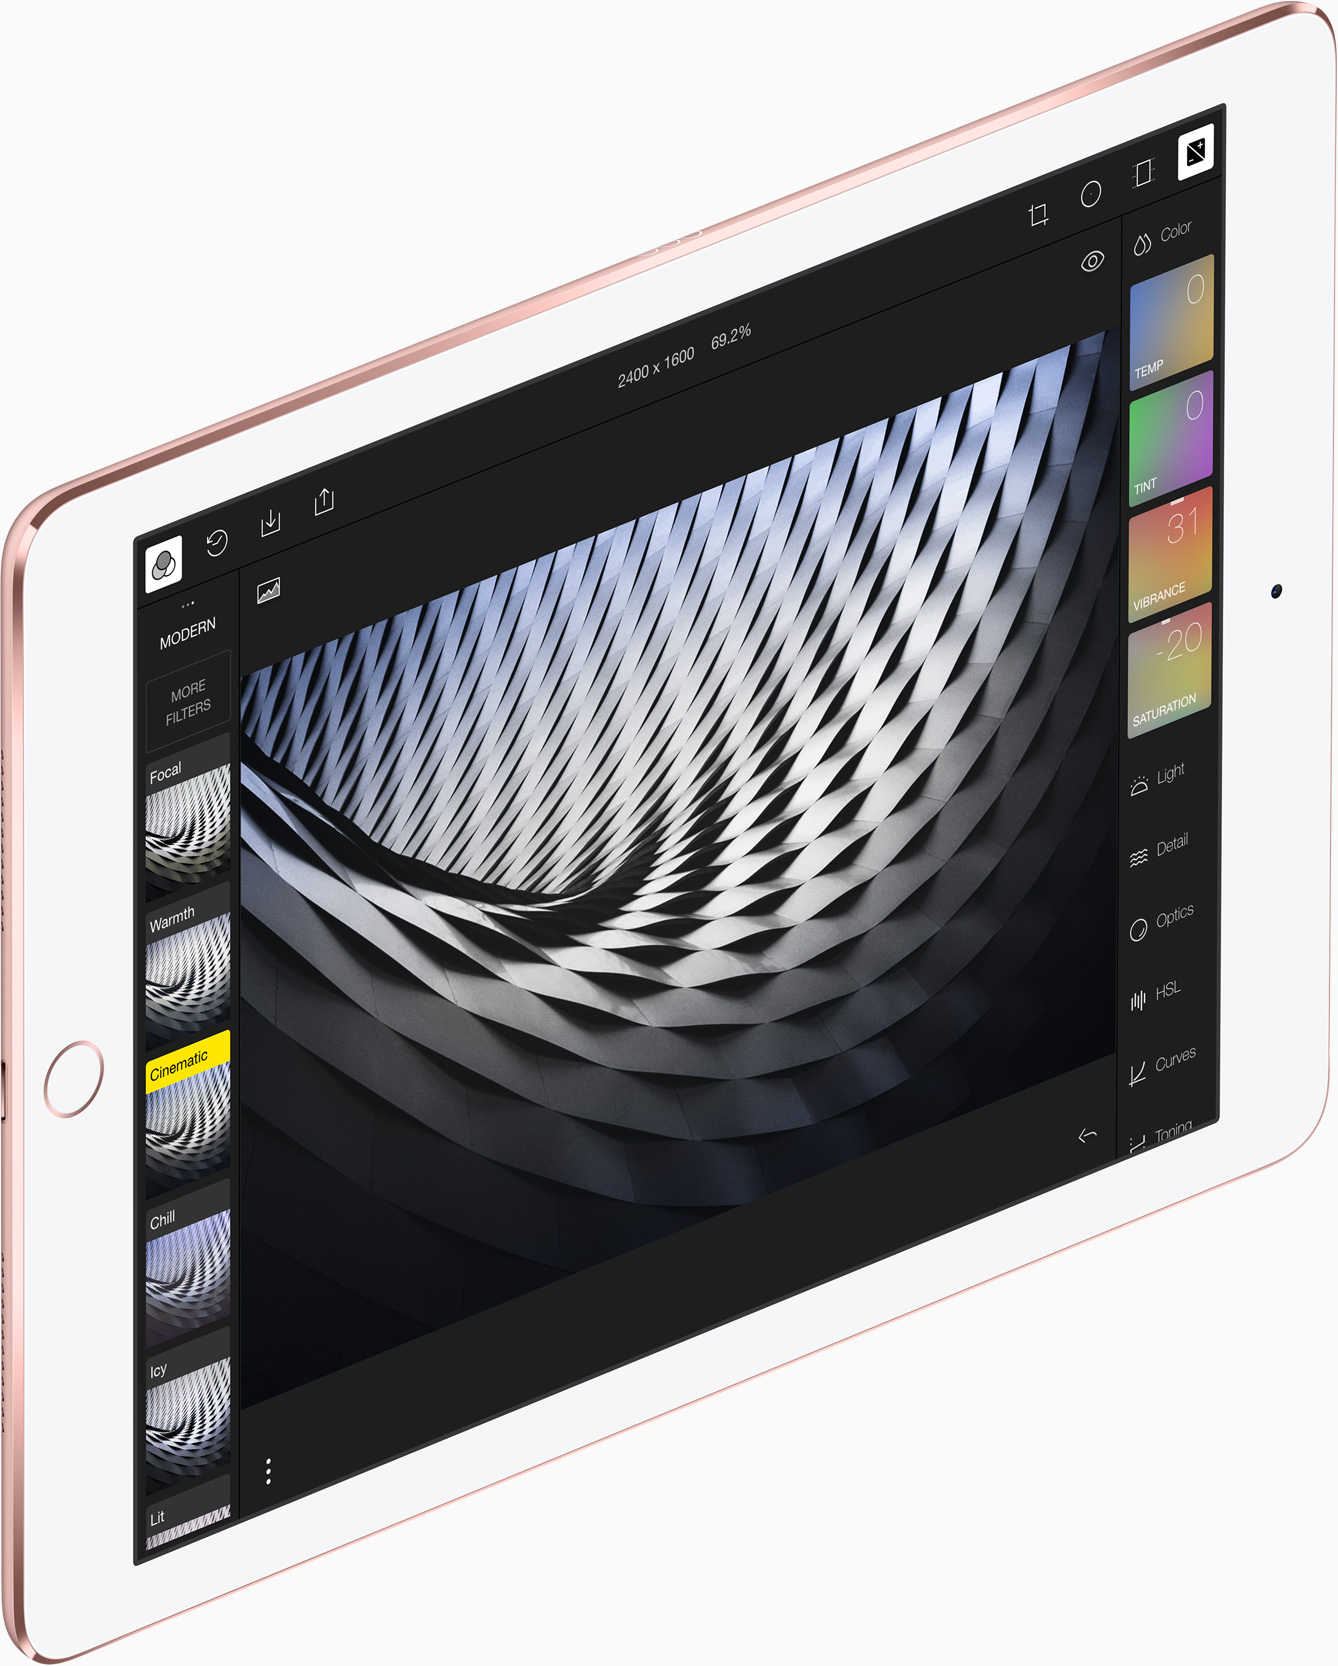 Design iPad Pro 9.7